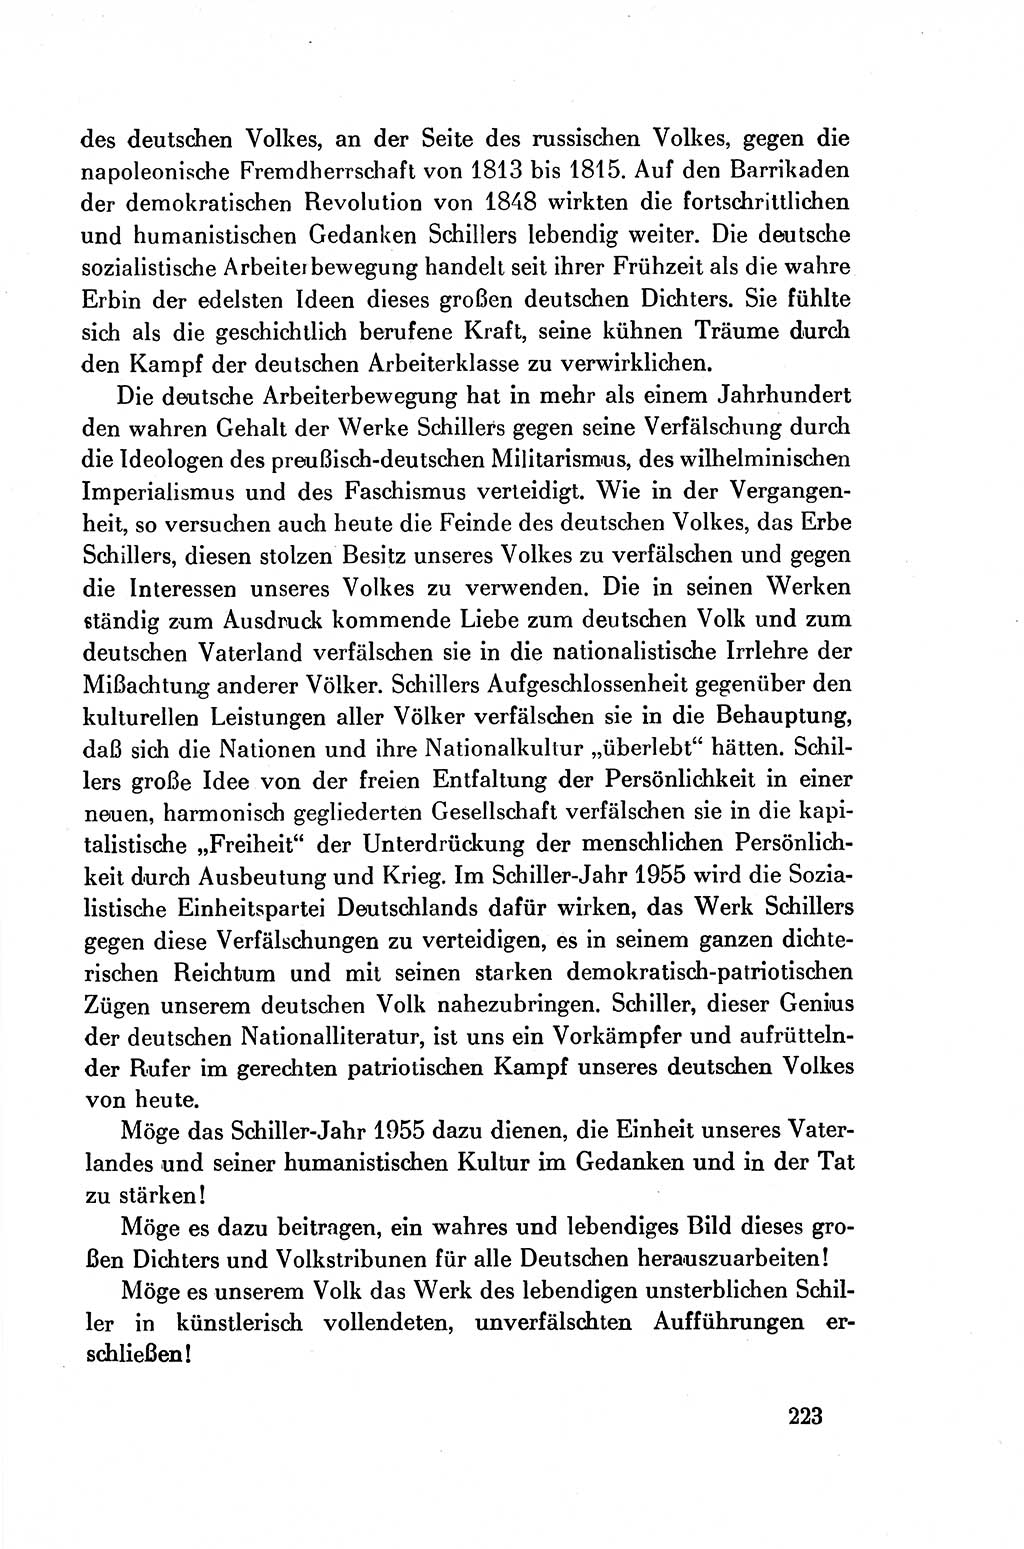 Dokumente der Sozialistischen Einheitspartei Deutschlands (SED) [Deutsche Demokratische Republik (DDR)] 1954-1955, Seite 223 (Dok. SED DDR 1954-1955, S. 223)